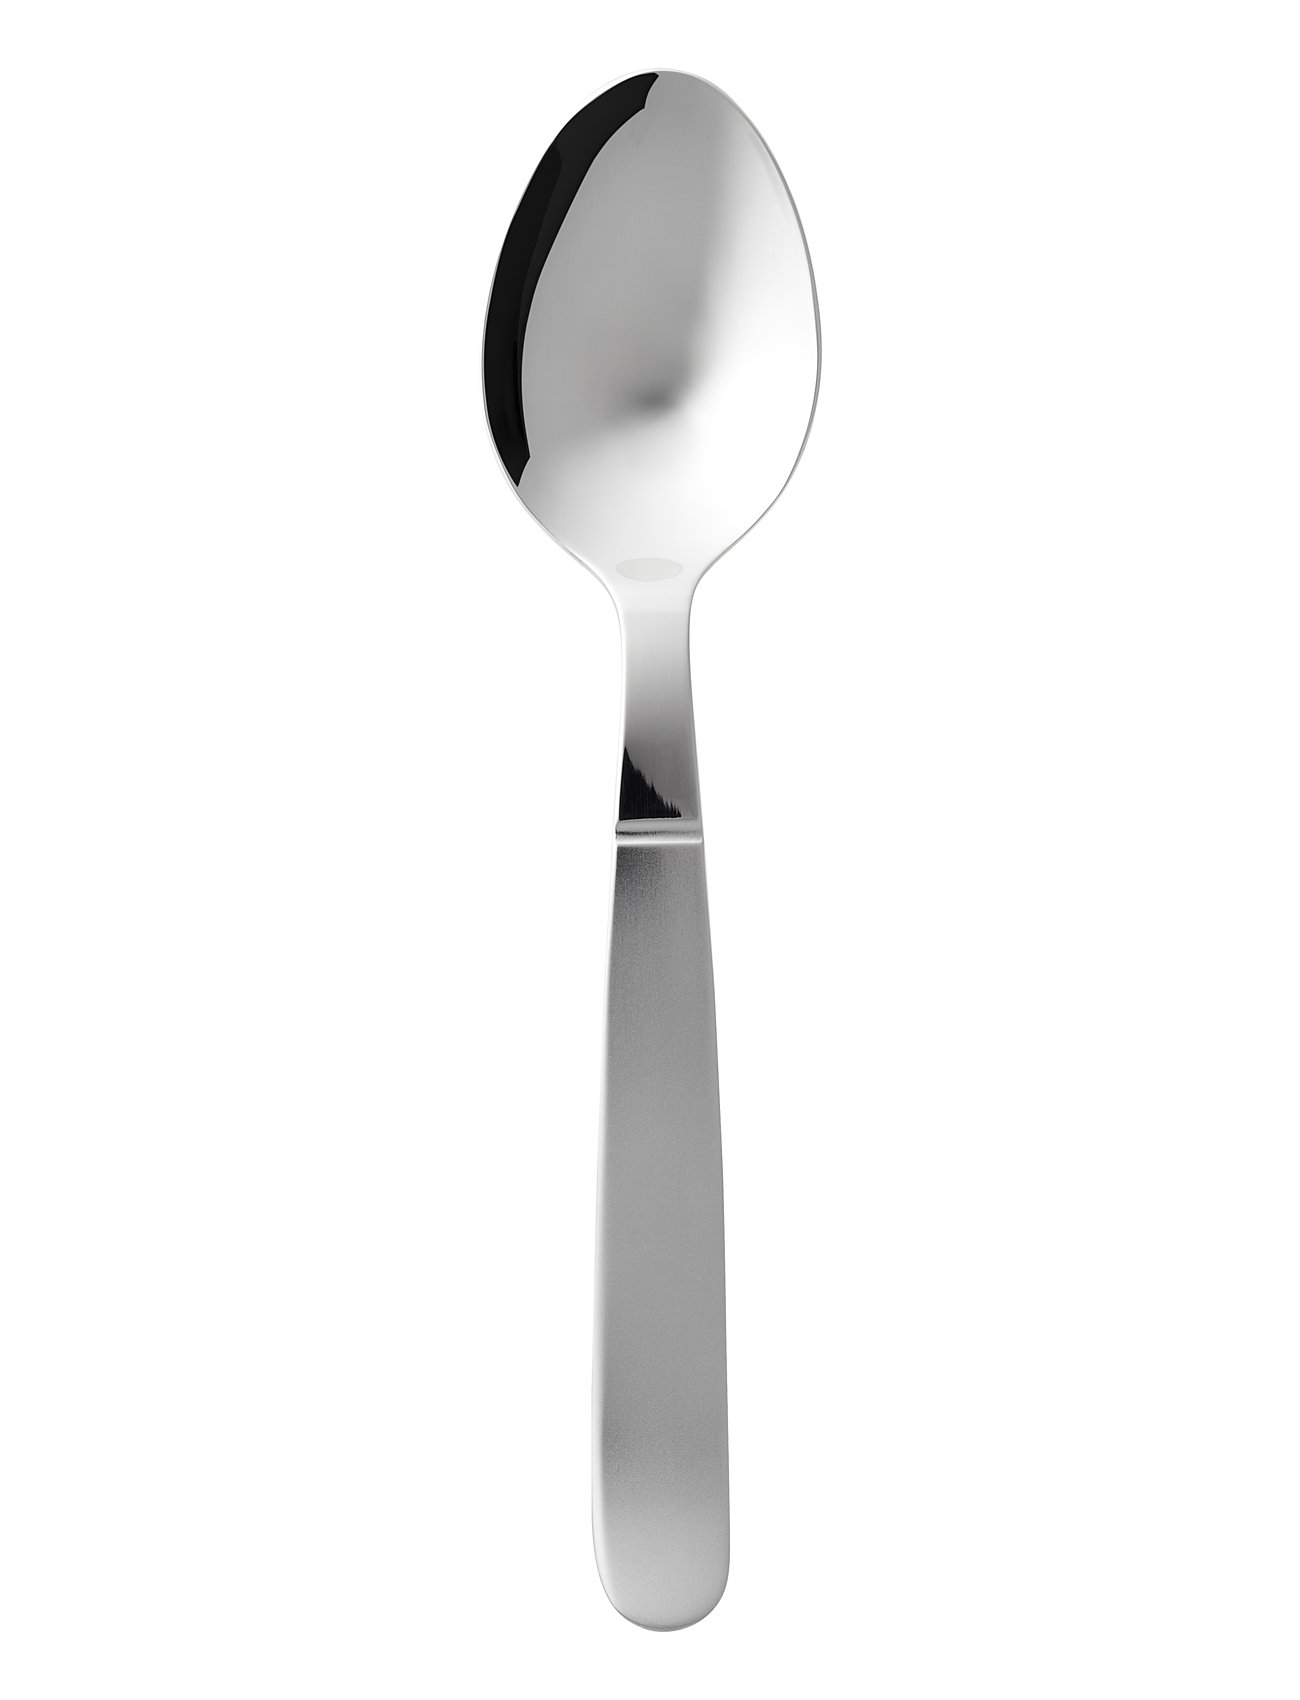 Spiseske Rejka 19,3 Cm Mat/Blank Stål Home Tableware Cutlery Spoons Table Spoons Silver Gense